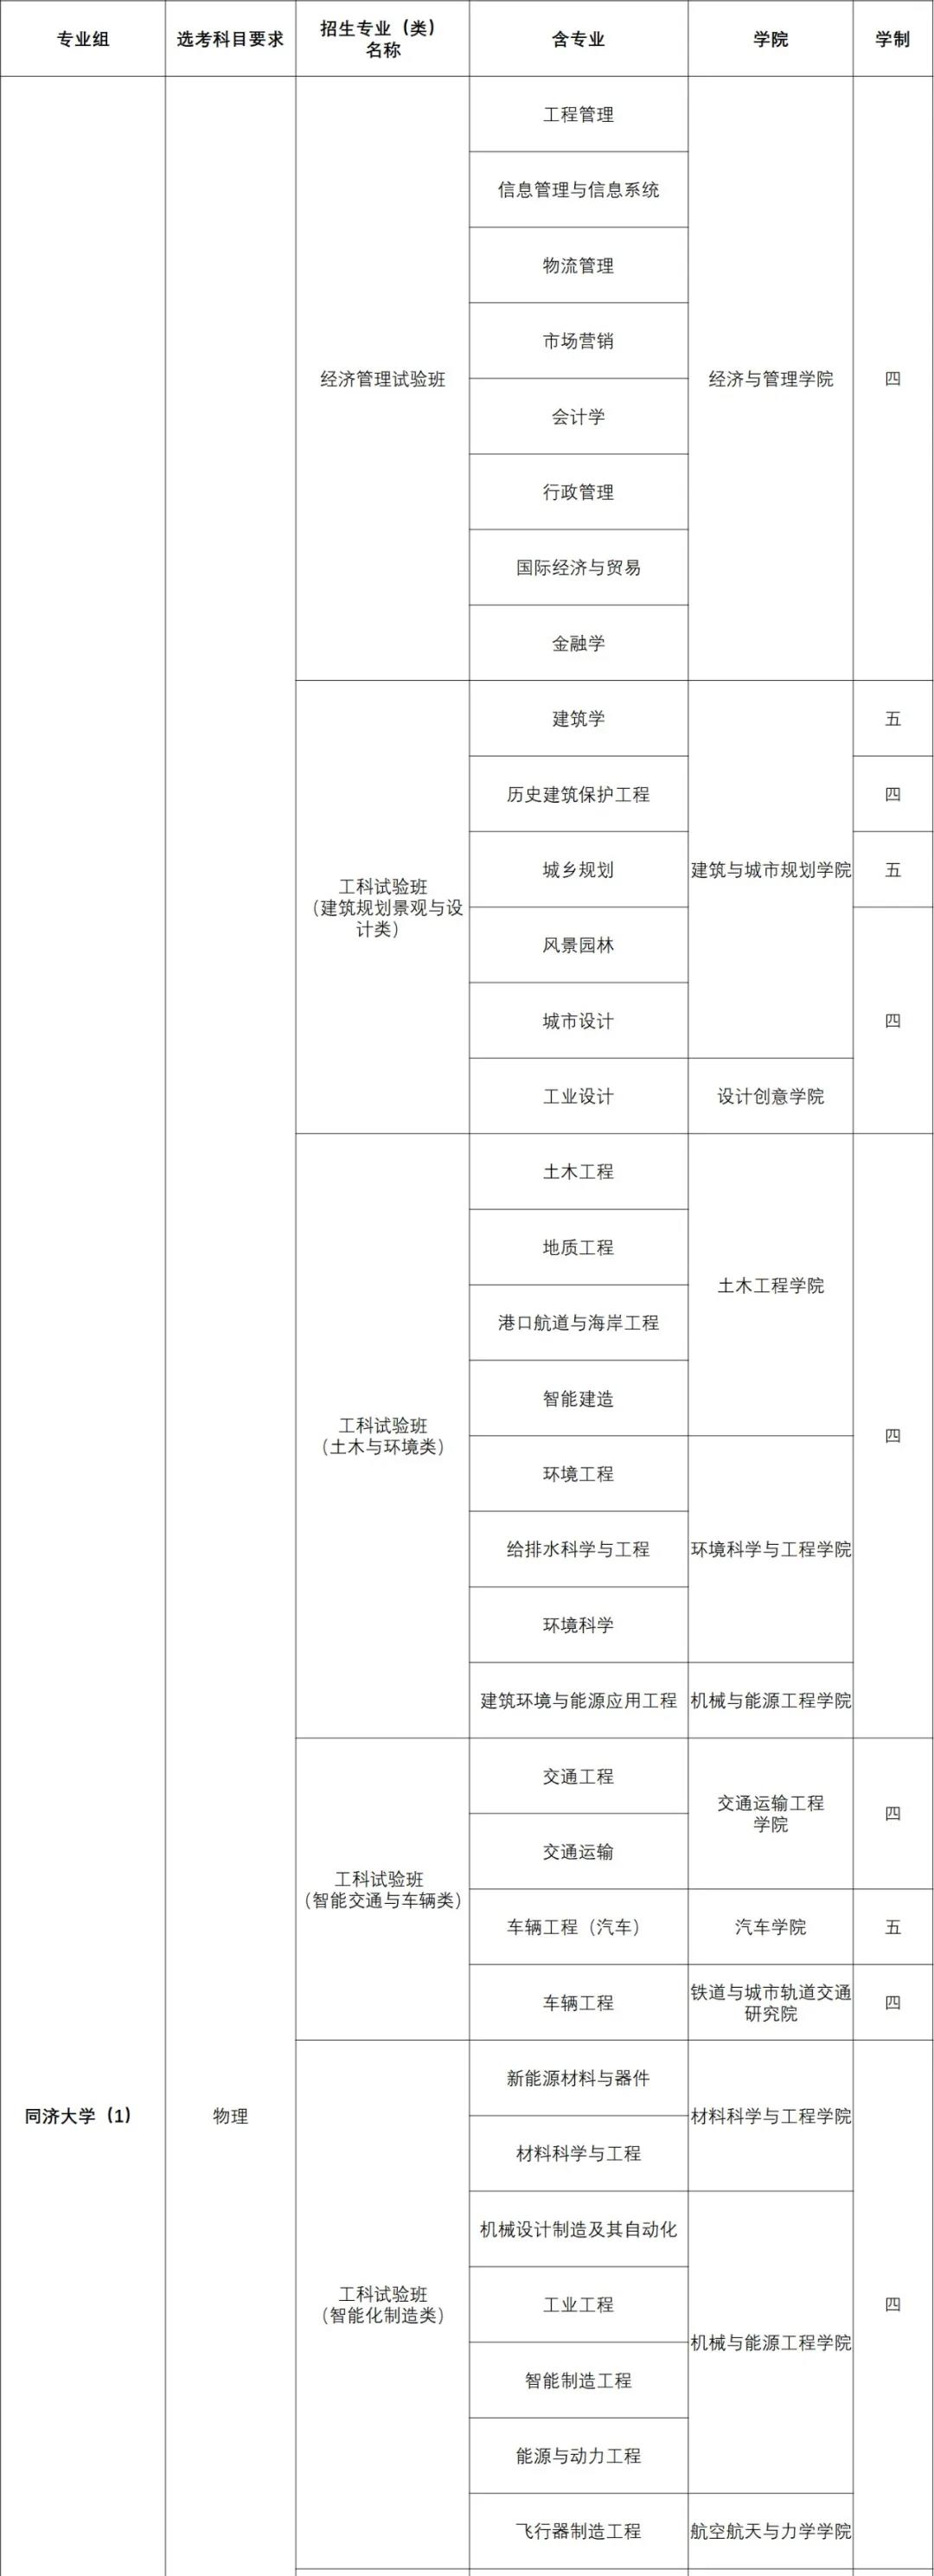 同济大学2021年上海市综合评价招生简章(图2)